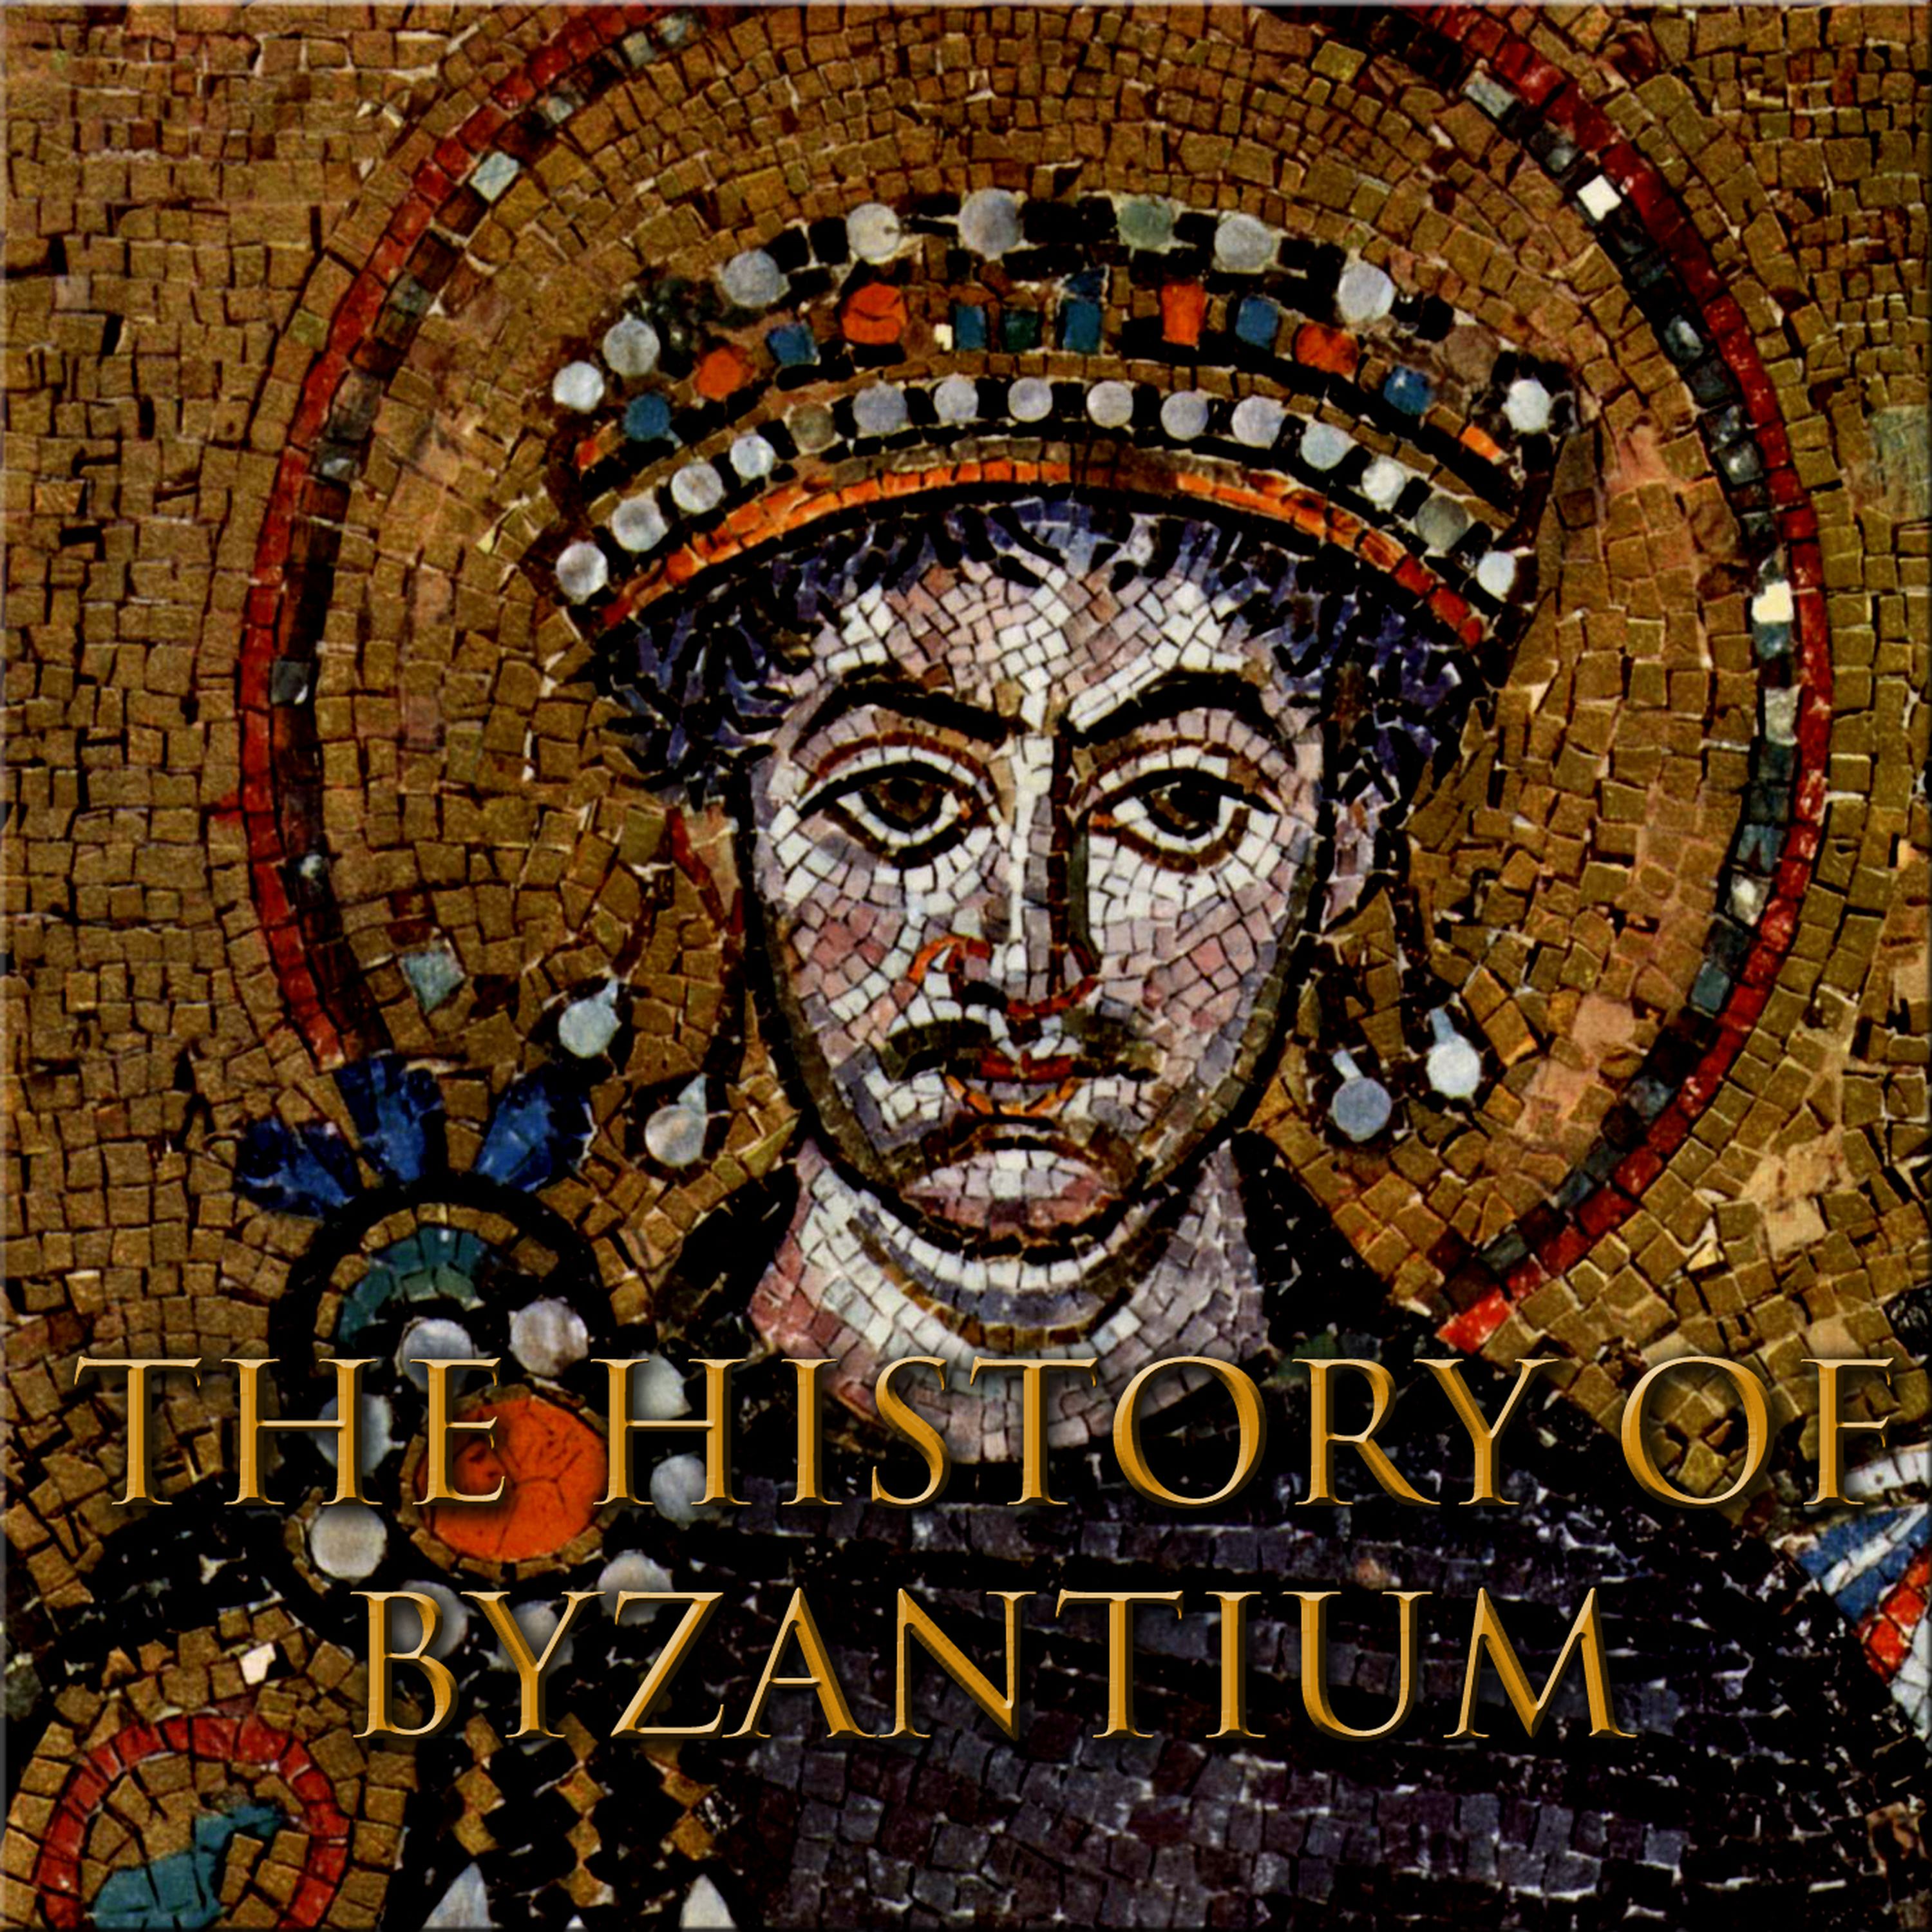 Backer Rewards Episode 1 - Byzantine Games